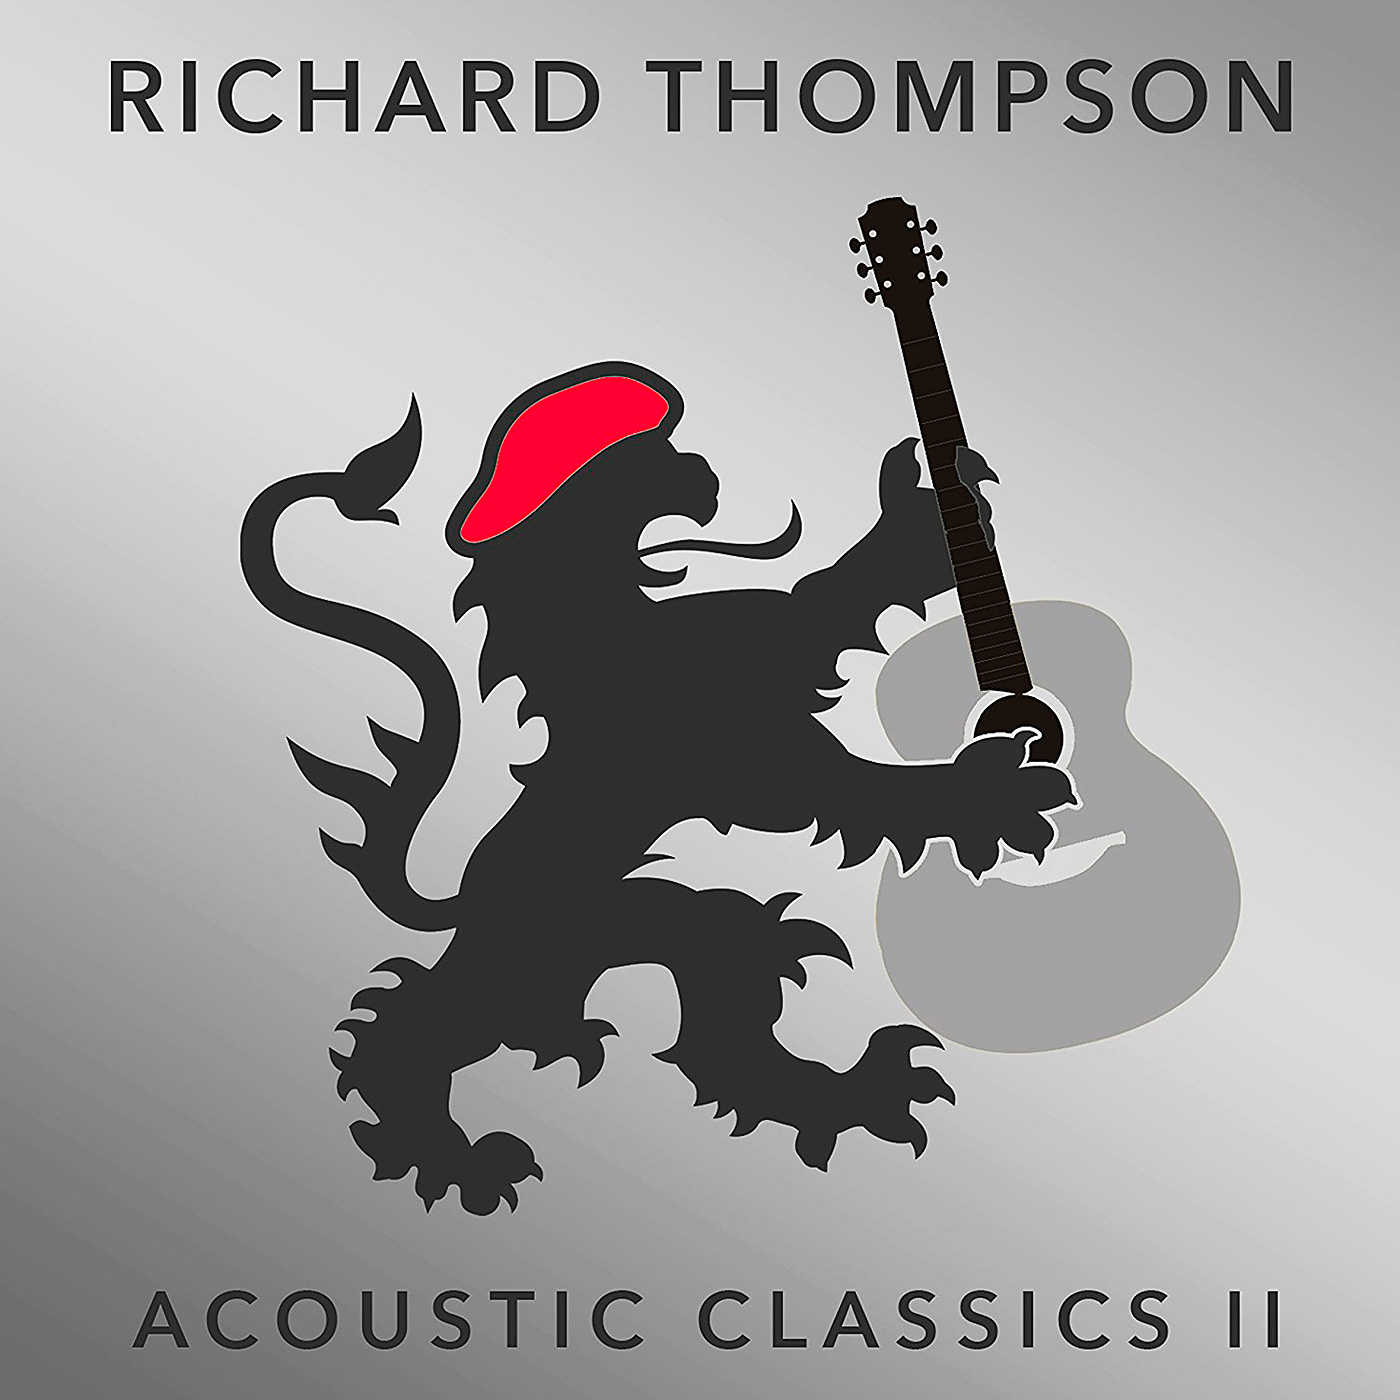 Richard Thompson - Acoustic Classics II (2017) [Qobuz FLAC 24bit/48kHz]